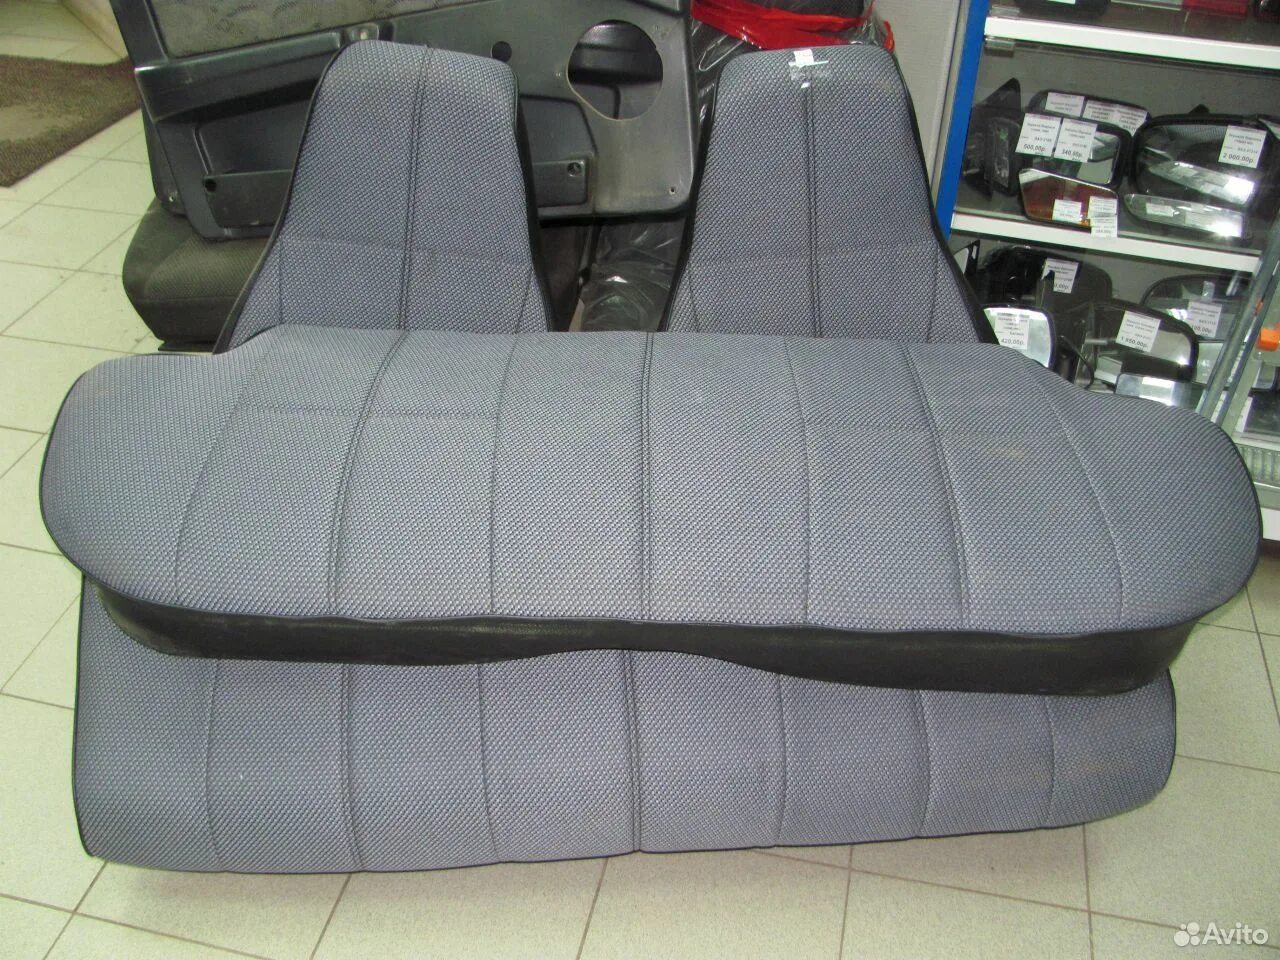 Комплект сидений на ВАЗ 2107. Водительское сиденье ВАЗ 2107. Кресло ВАЗ 2107. Сидушка ВАЗ 2107. Сиденья семерки